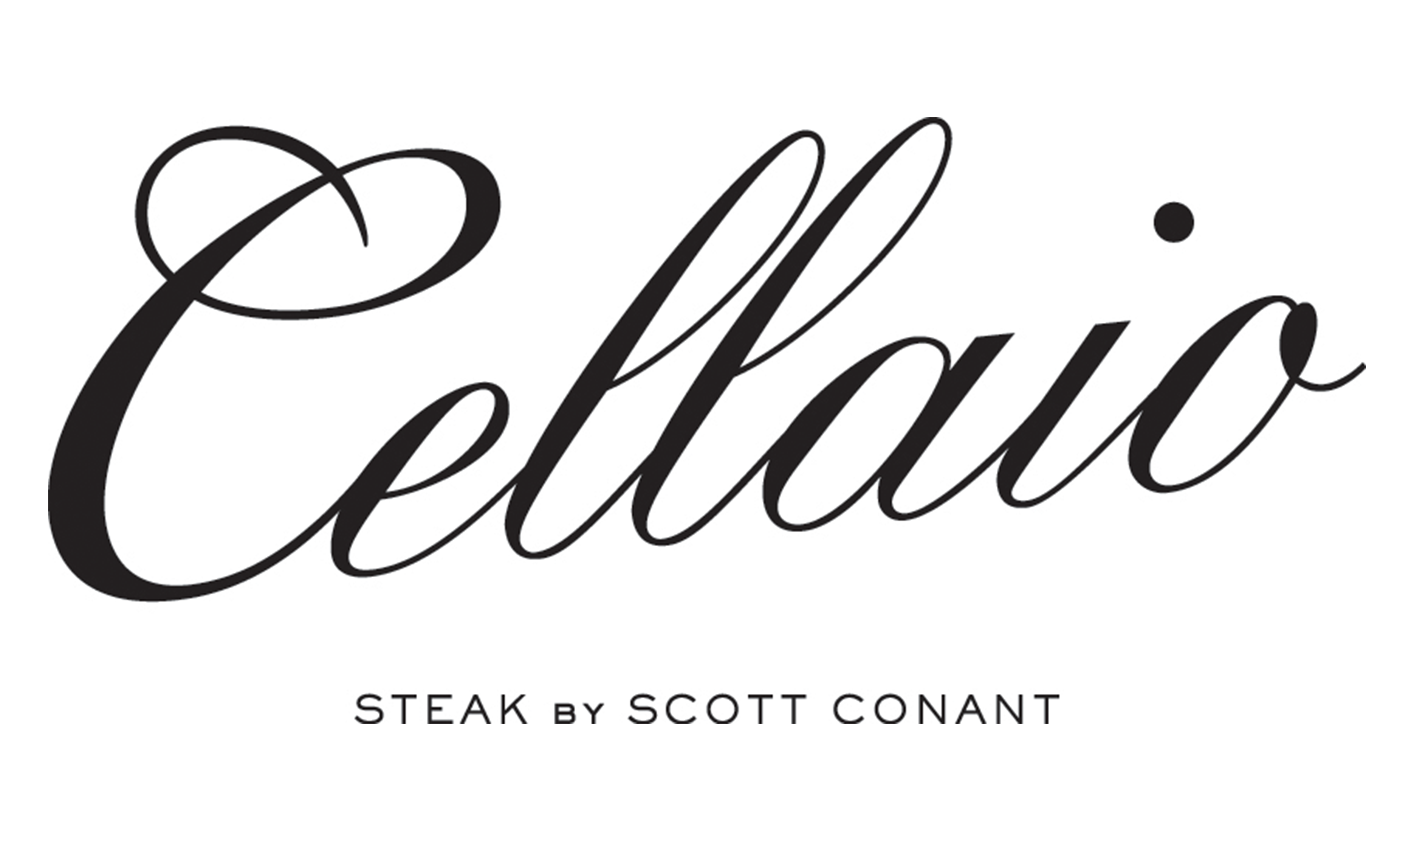 cellaio logo